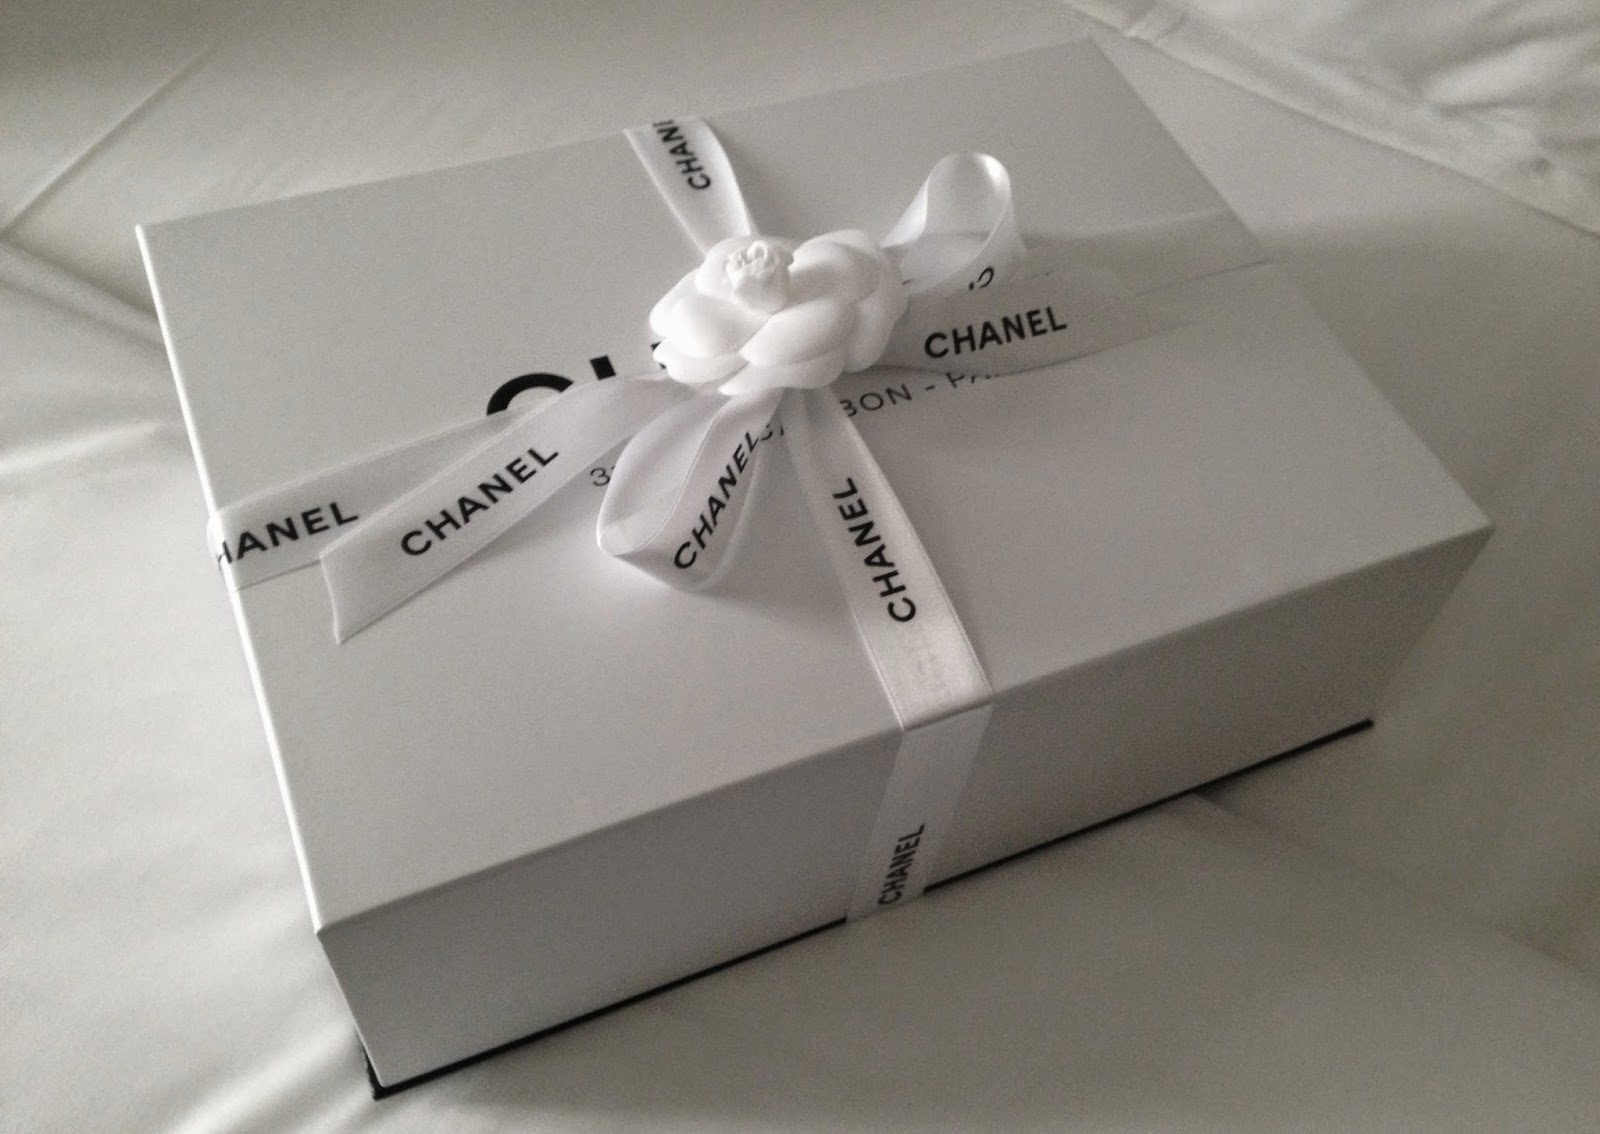 DOMIDOMIDOMIII: Bag Chat- Chanel Classic Flap Reveal